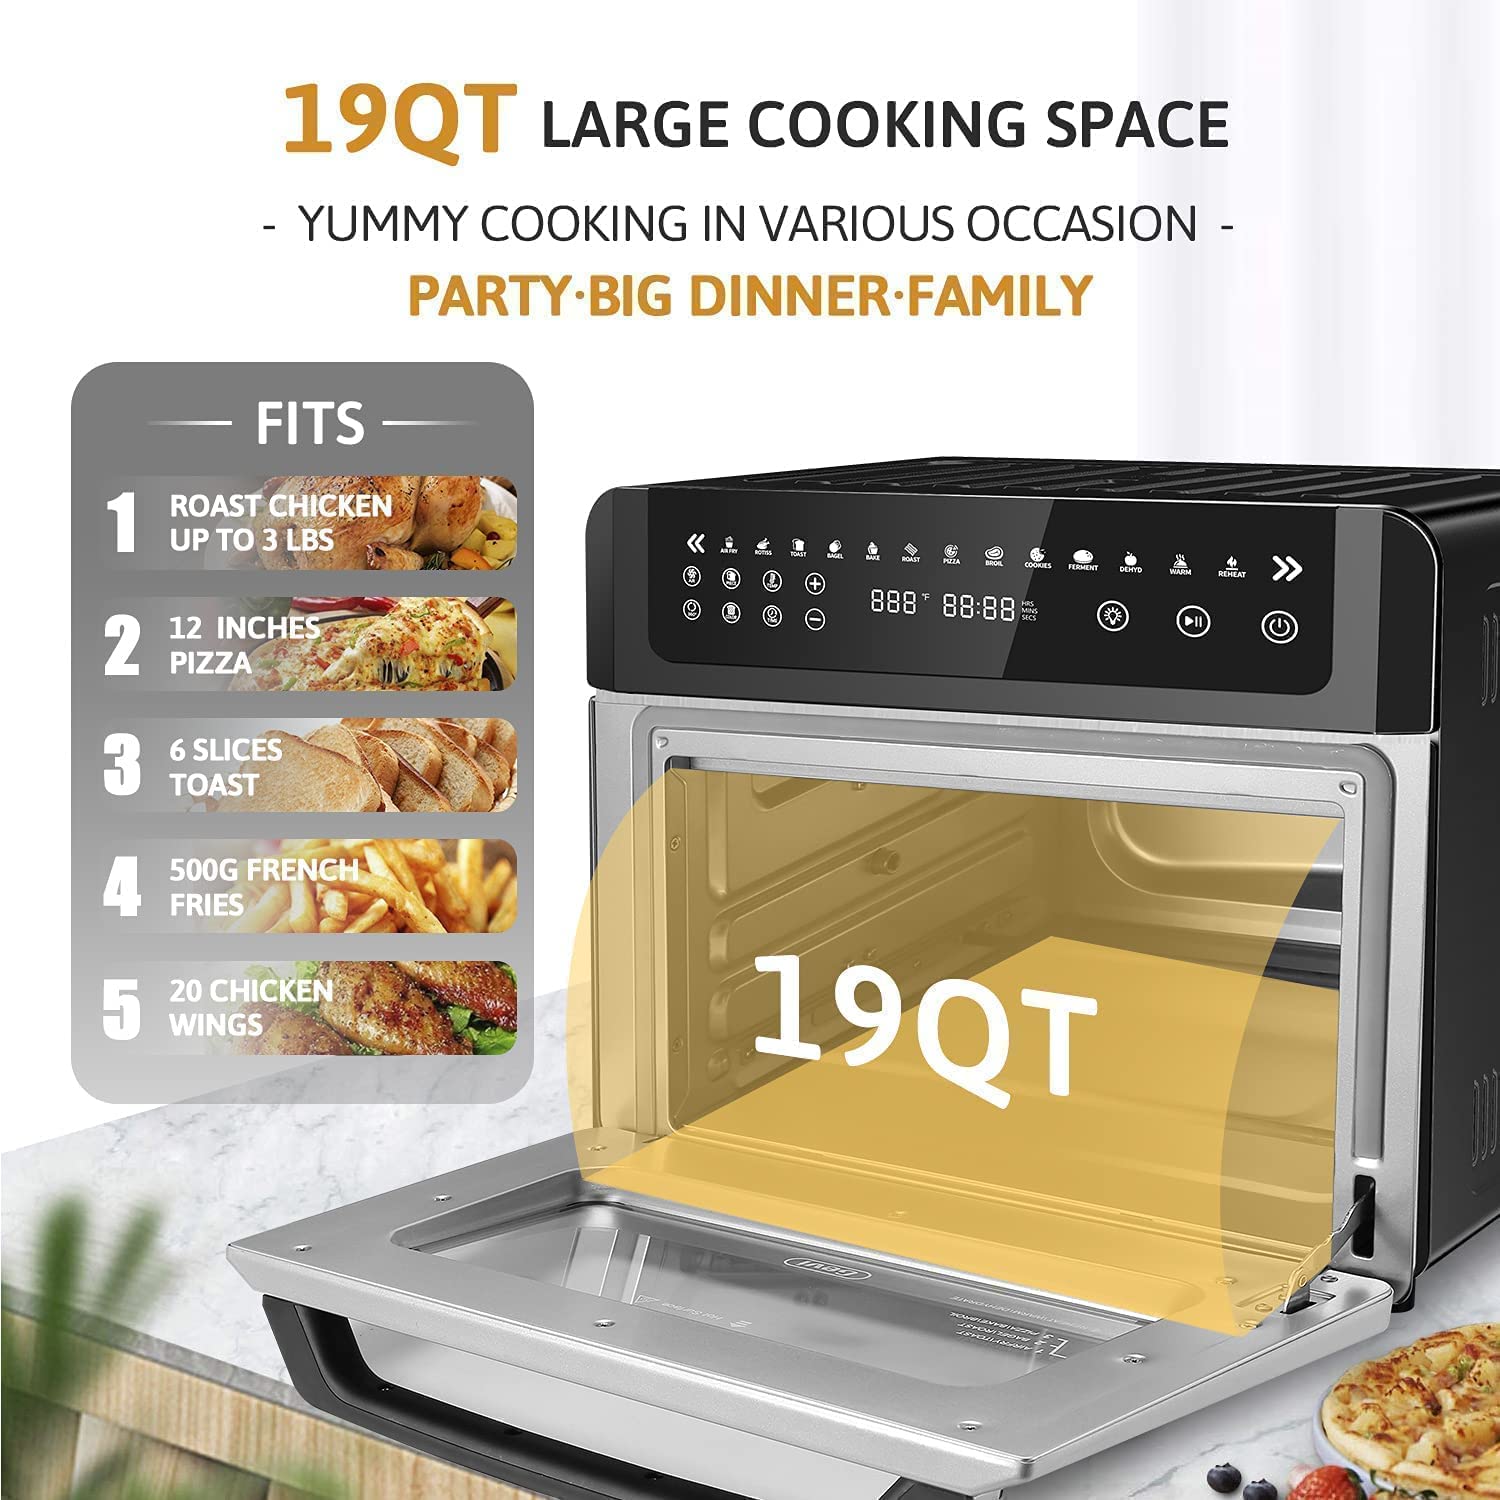 Gevi Air Fryer Toaster Oven Combo, Black – GEVI